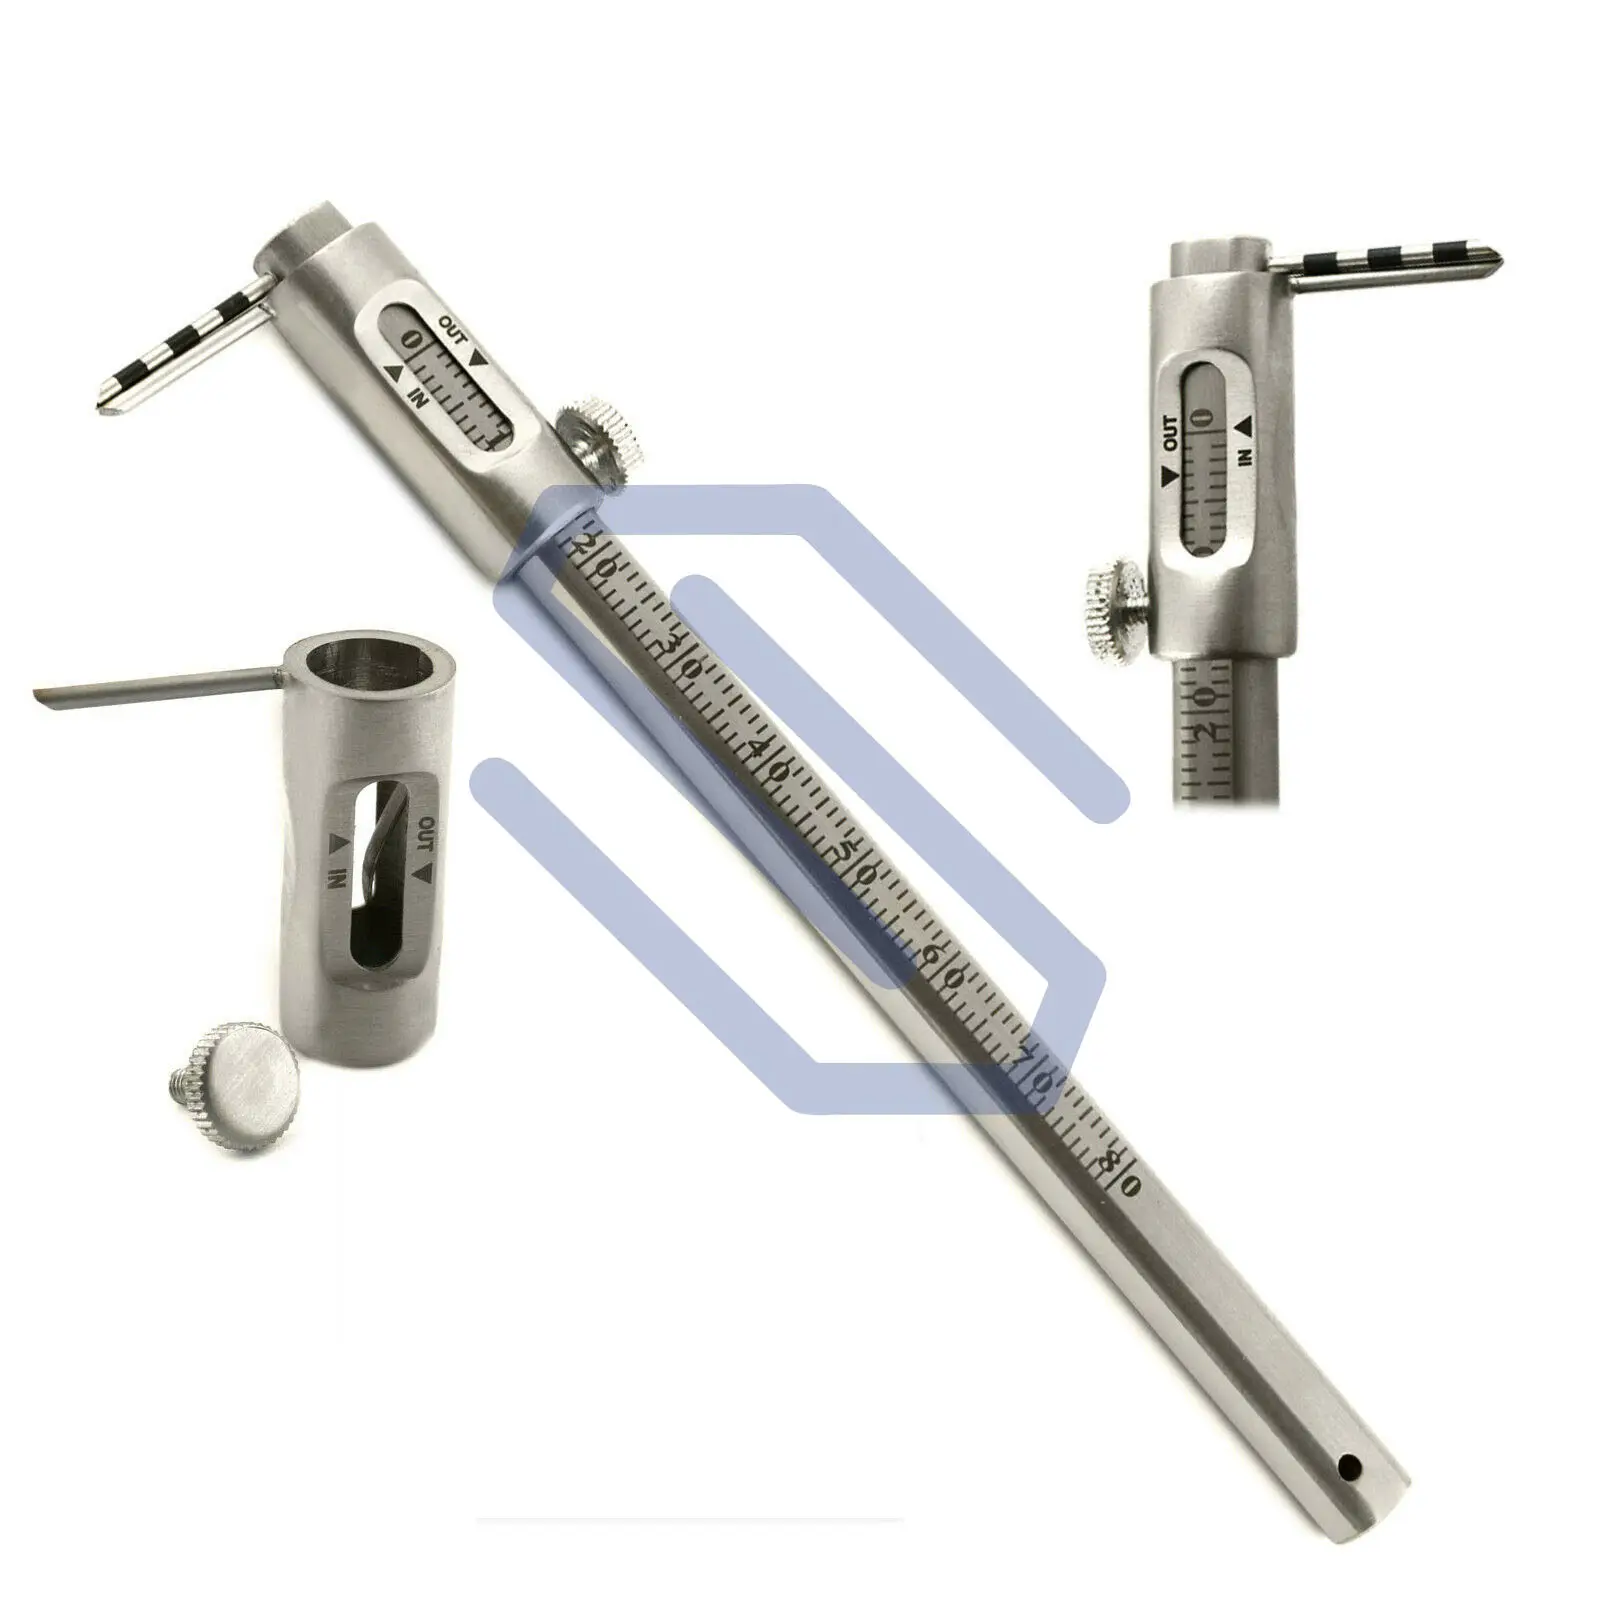 Krekeler calibro scorrevole calibro 0-80mm misuratori dentali ortodonzia laboratorio strumenti chirurgici acciaio inossidabile